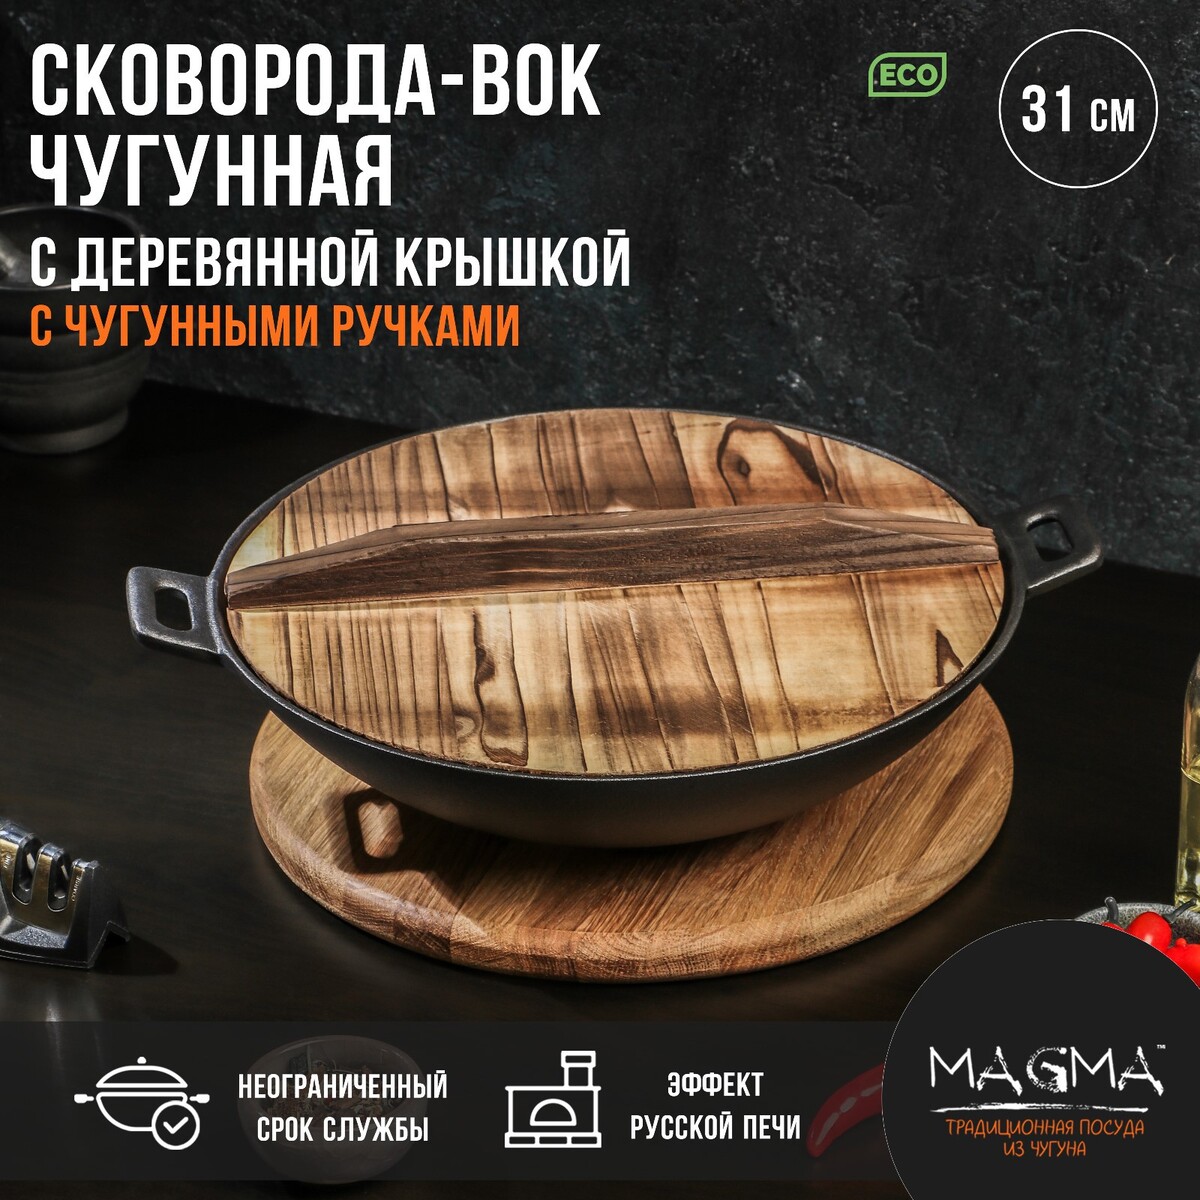 Сковорода-вок чугунная magma сковорода чугунная на деревянной подставке